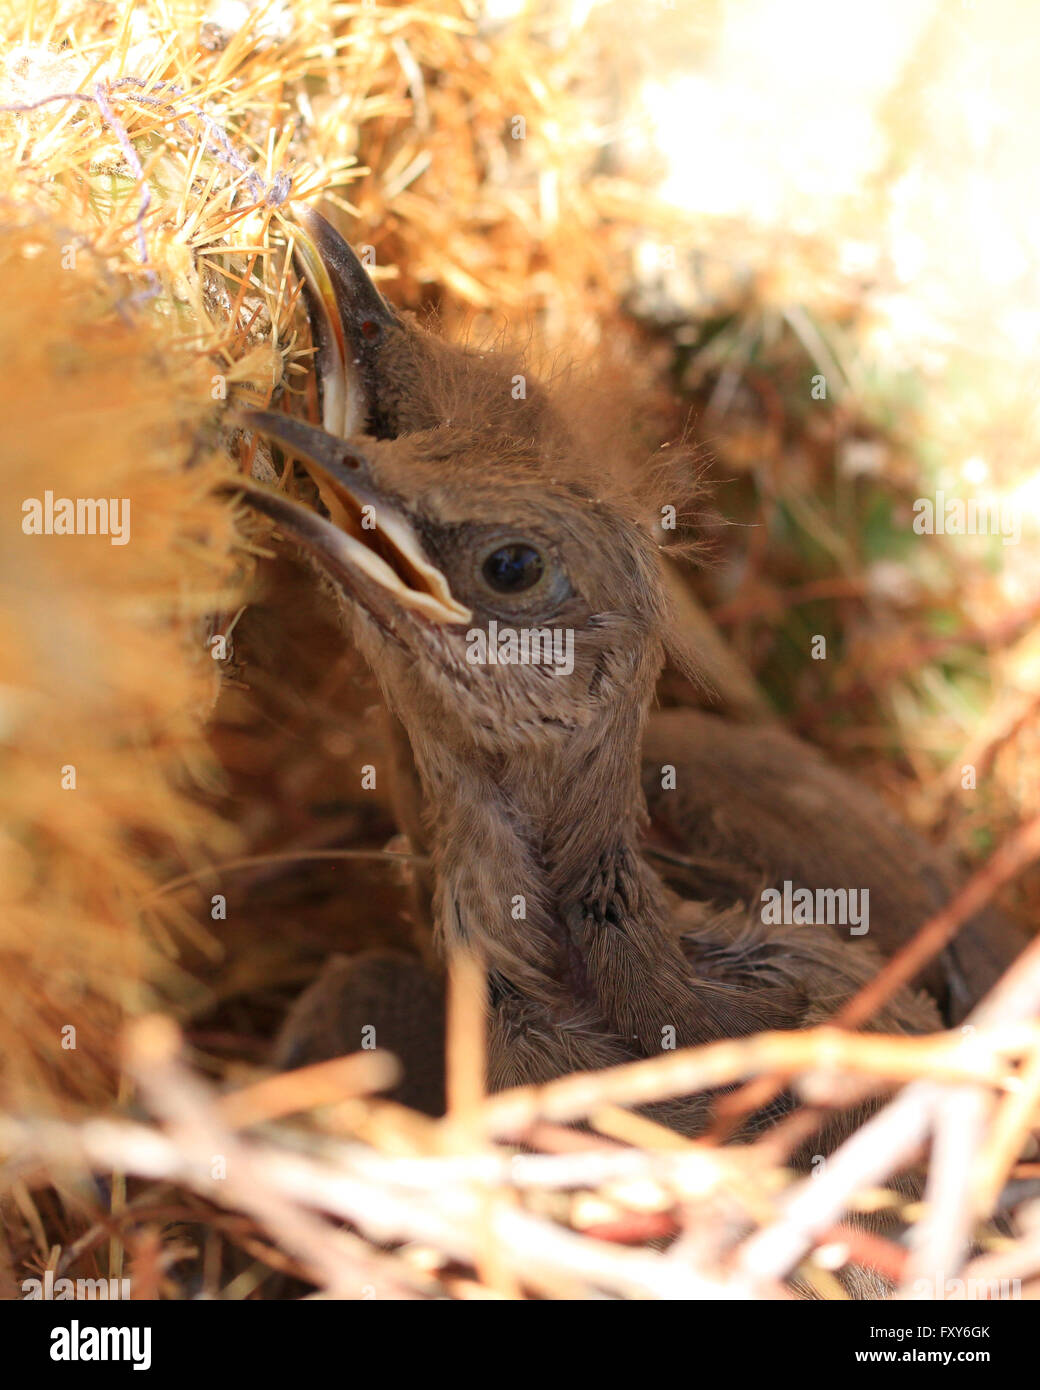 Récemment éclos oiseaux bébé assis dans un nid dans un cactus à Scottsdale, Arizona Banque D'Images